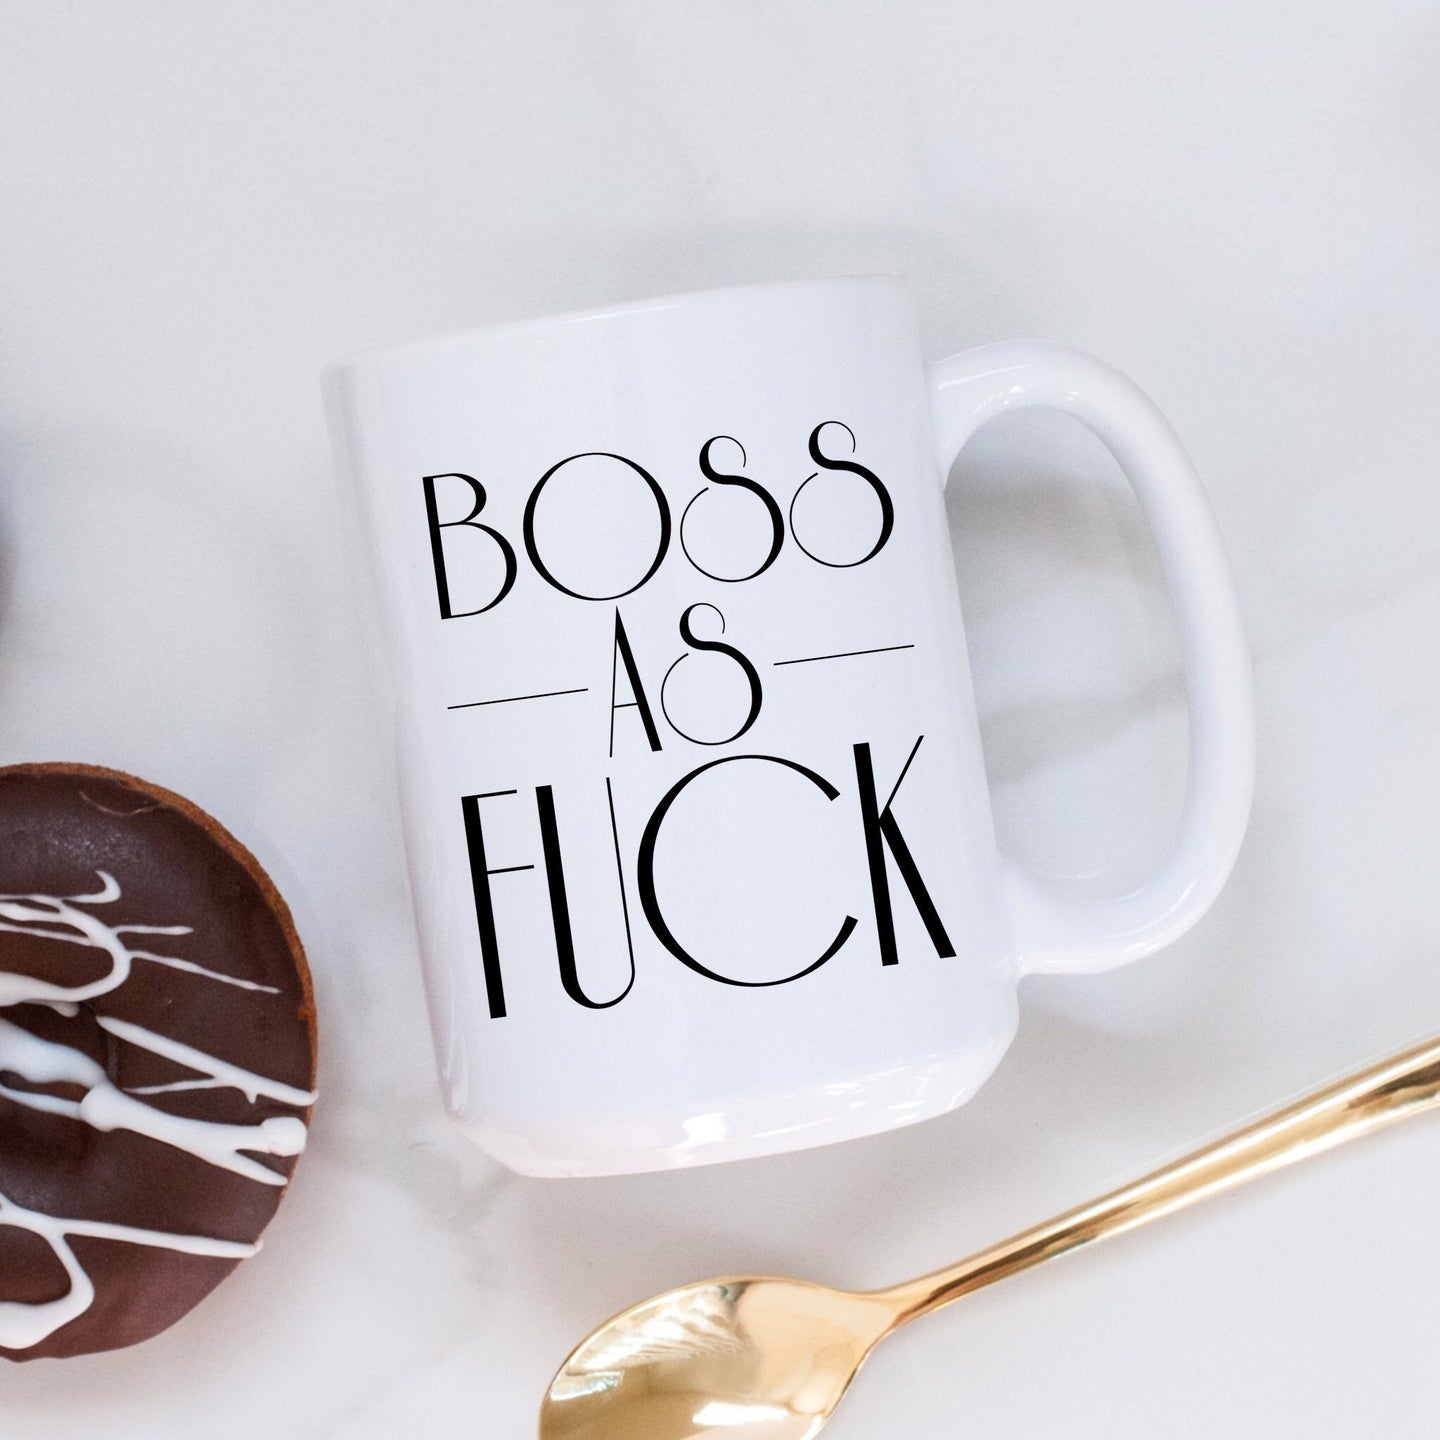 Boss as Fuck